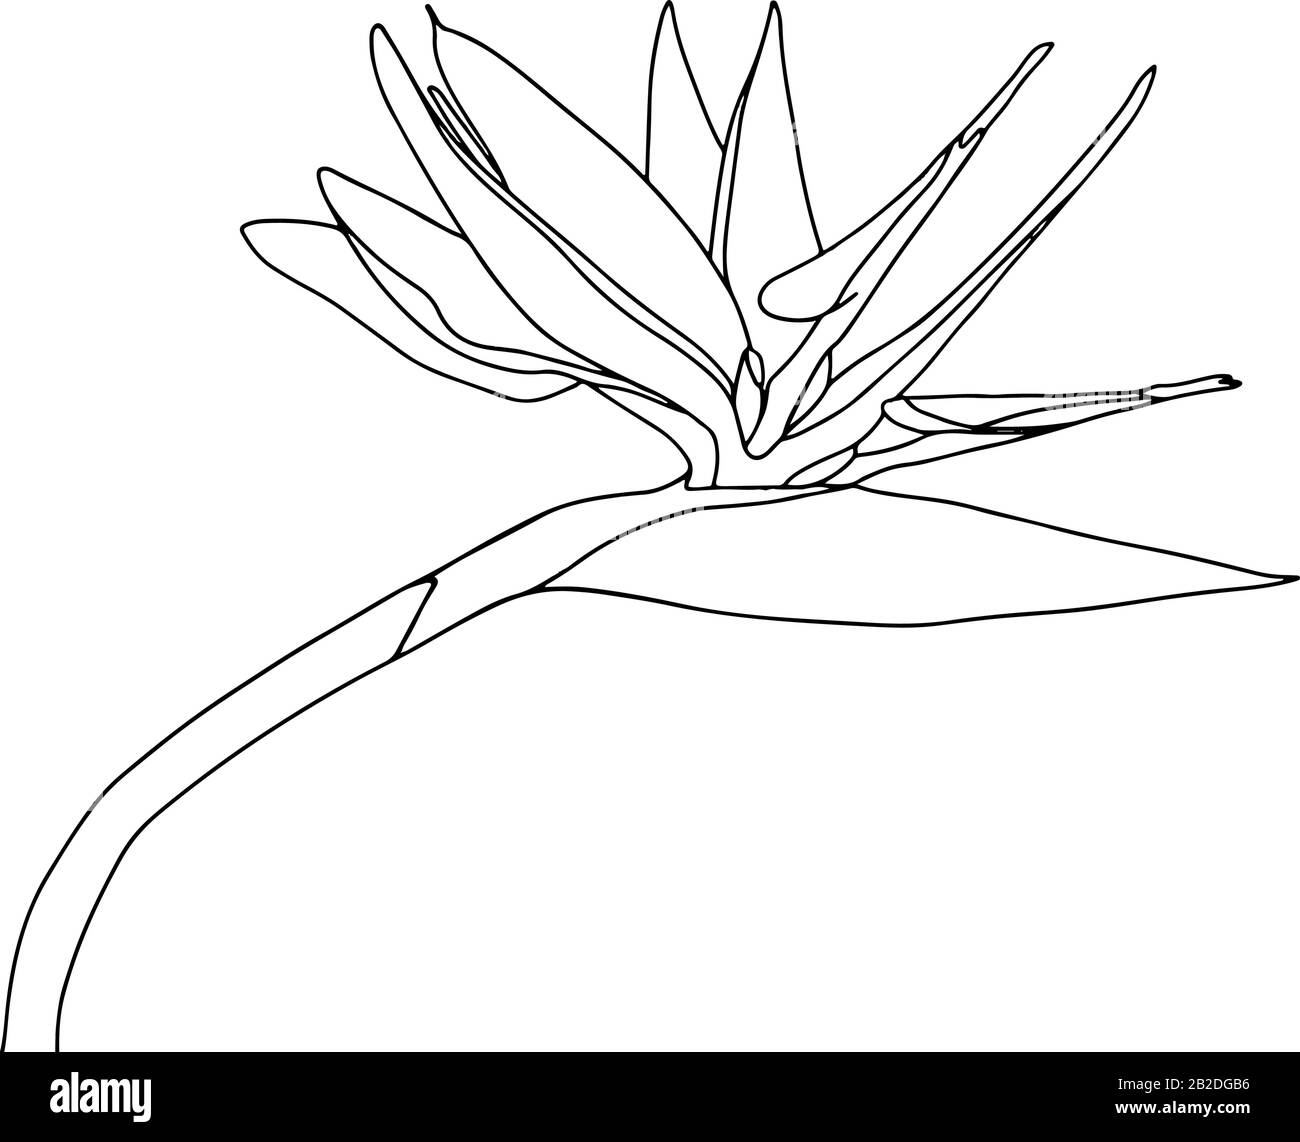 Strelitzia reginae tropicale sud africa fiore isolato su sfondo bianco. Vector stock illustration.Outline tattoo print,logo.bird of Paradise. Illustrazione Vettoriale